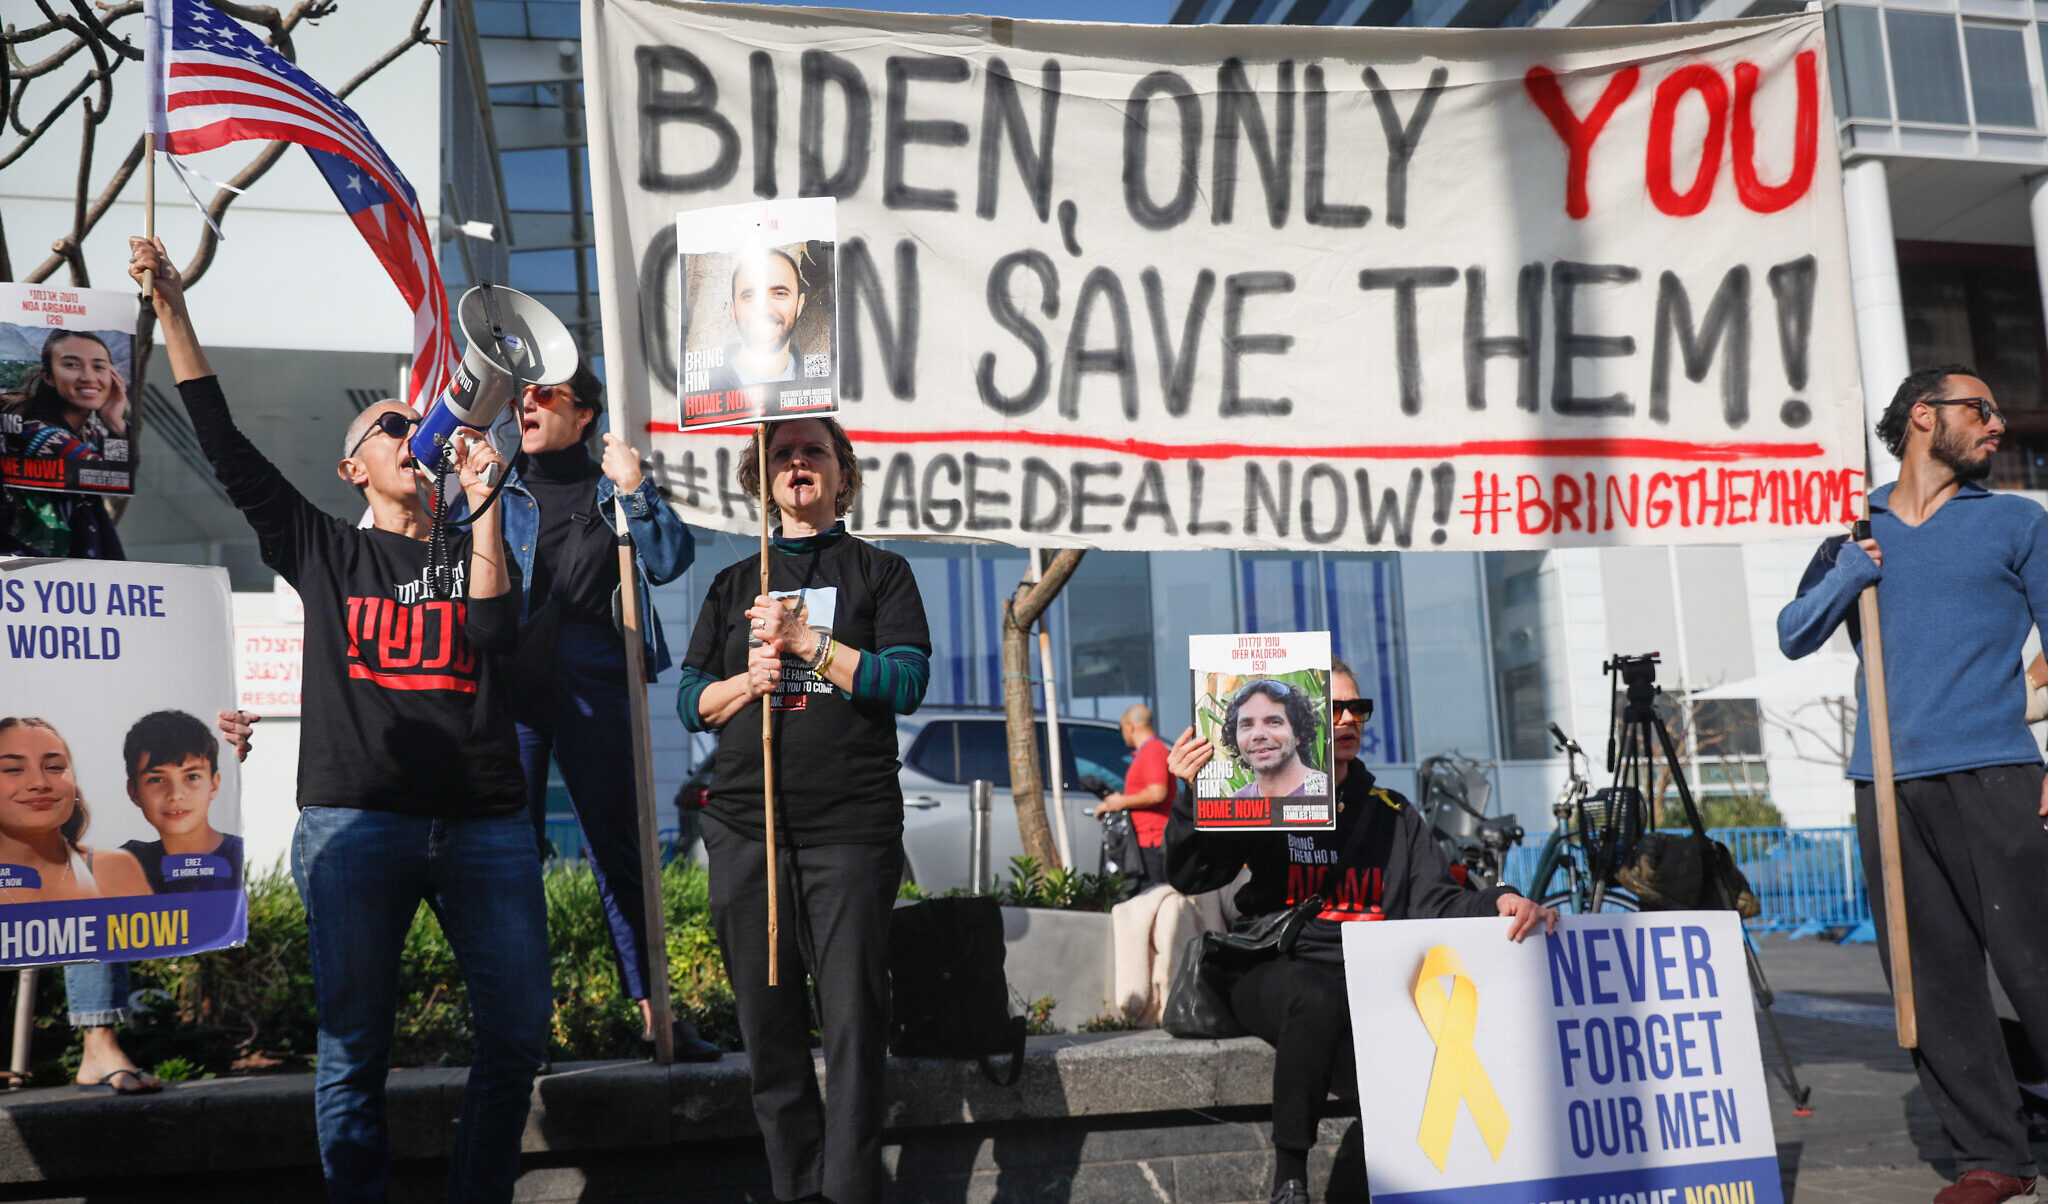 I familiari degli ostaggi davanti all'hotel di Blinken: "Solo Biden può salvarli"